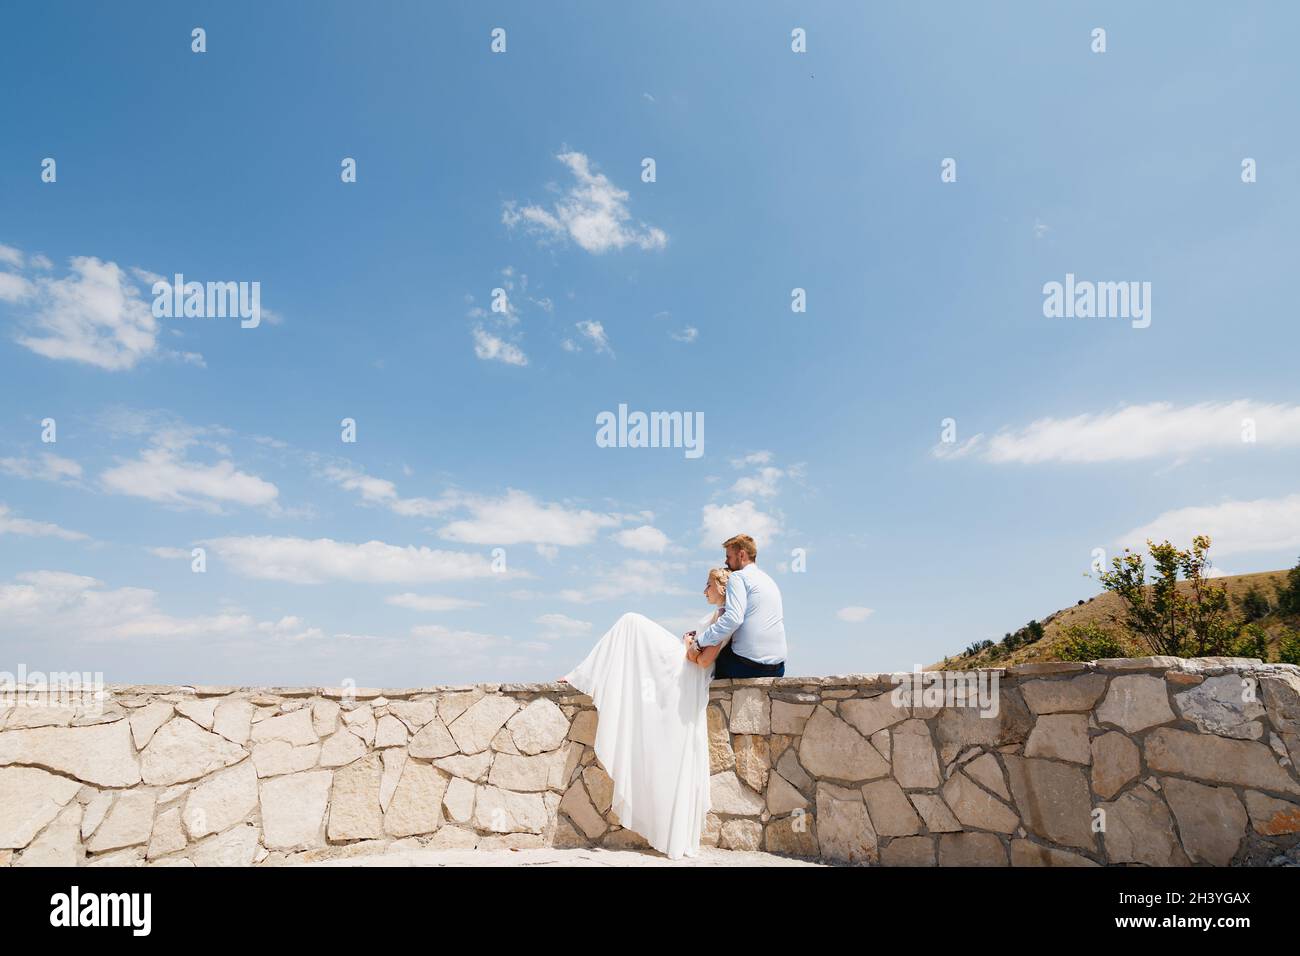 Braut und Bräutigam sitzen auf einem Steinzaun, die Braut lehnt sich an den Bräutigam, der Bräutigam umarmt sie sanft Stockfoto